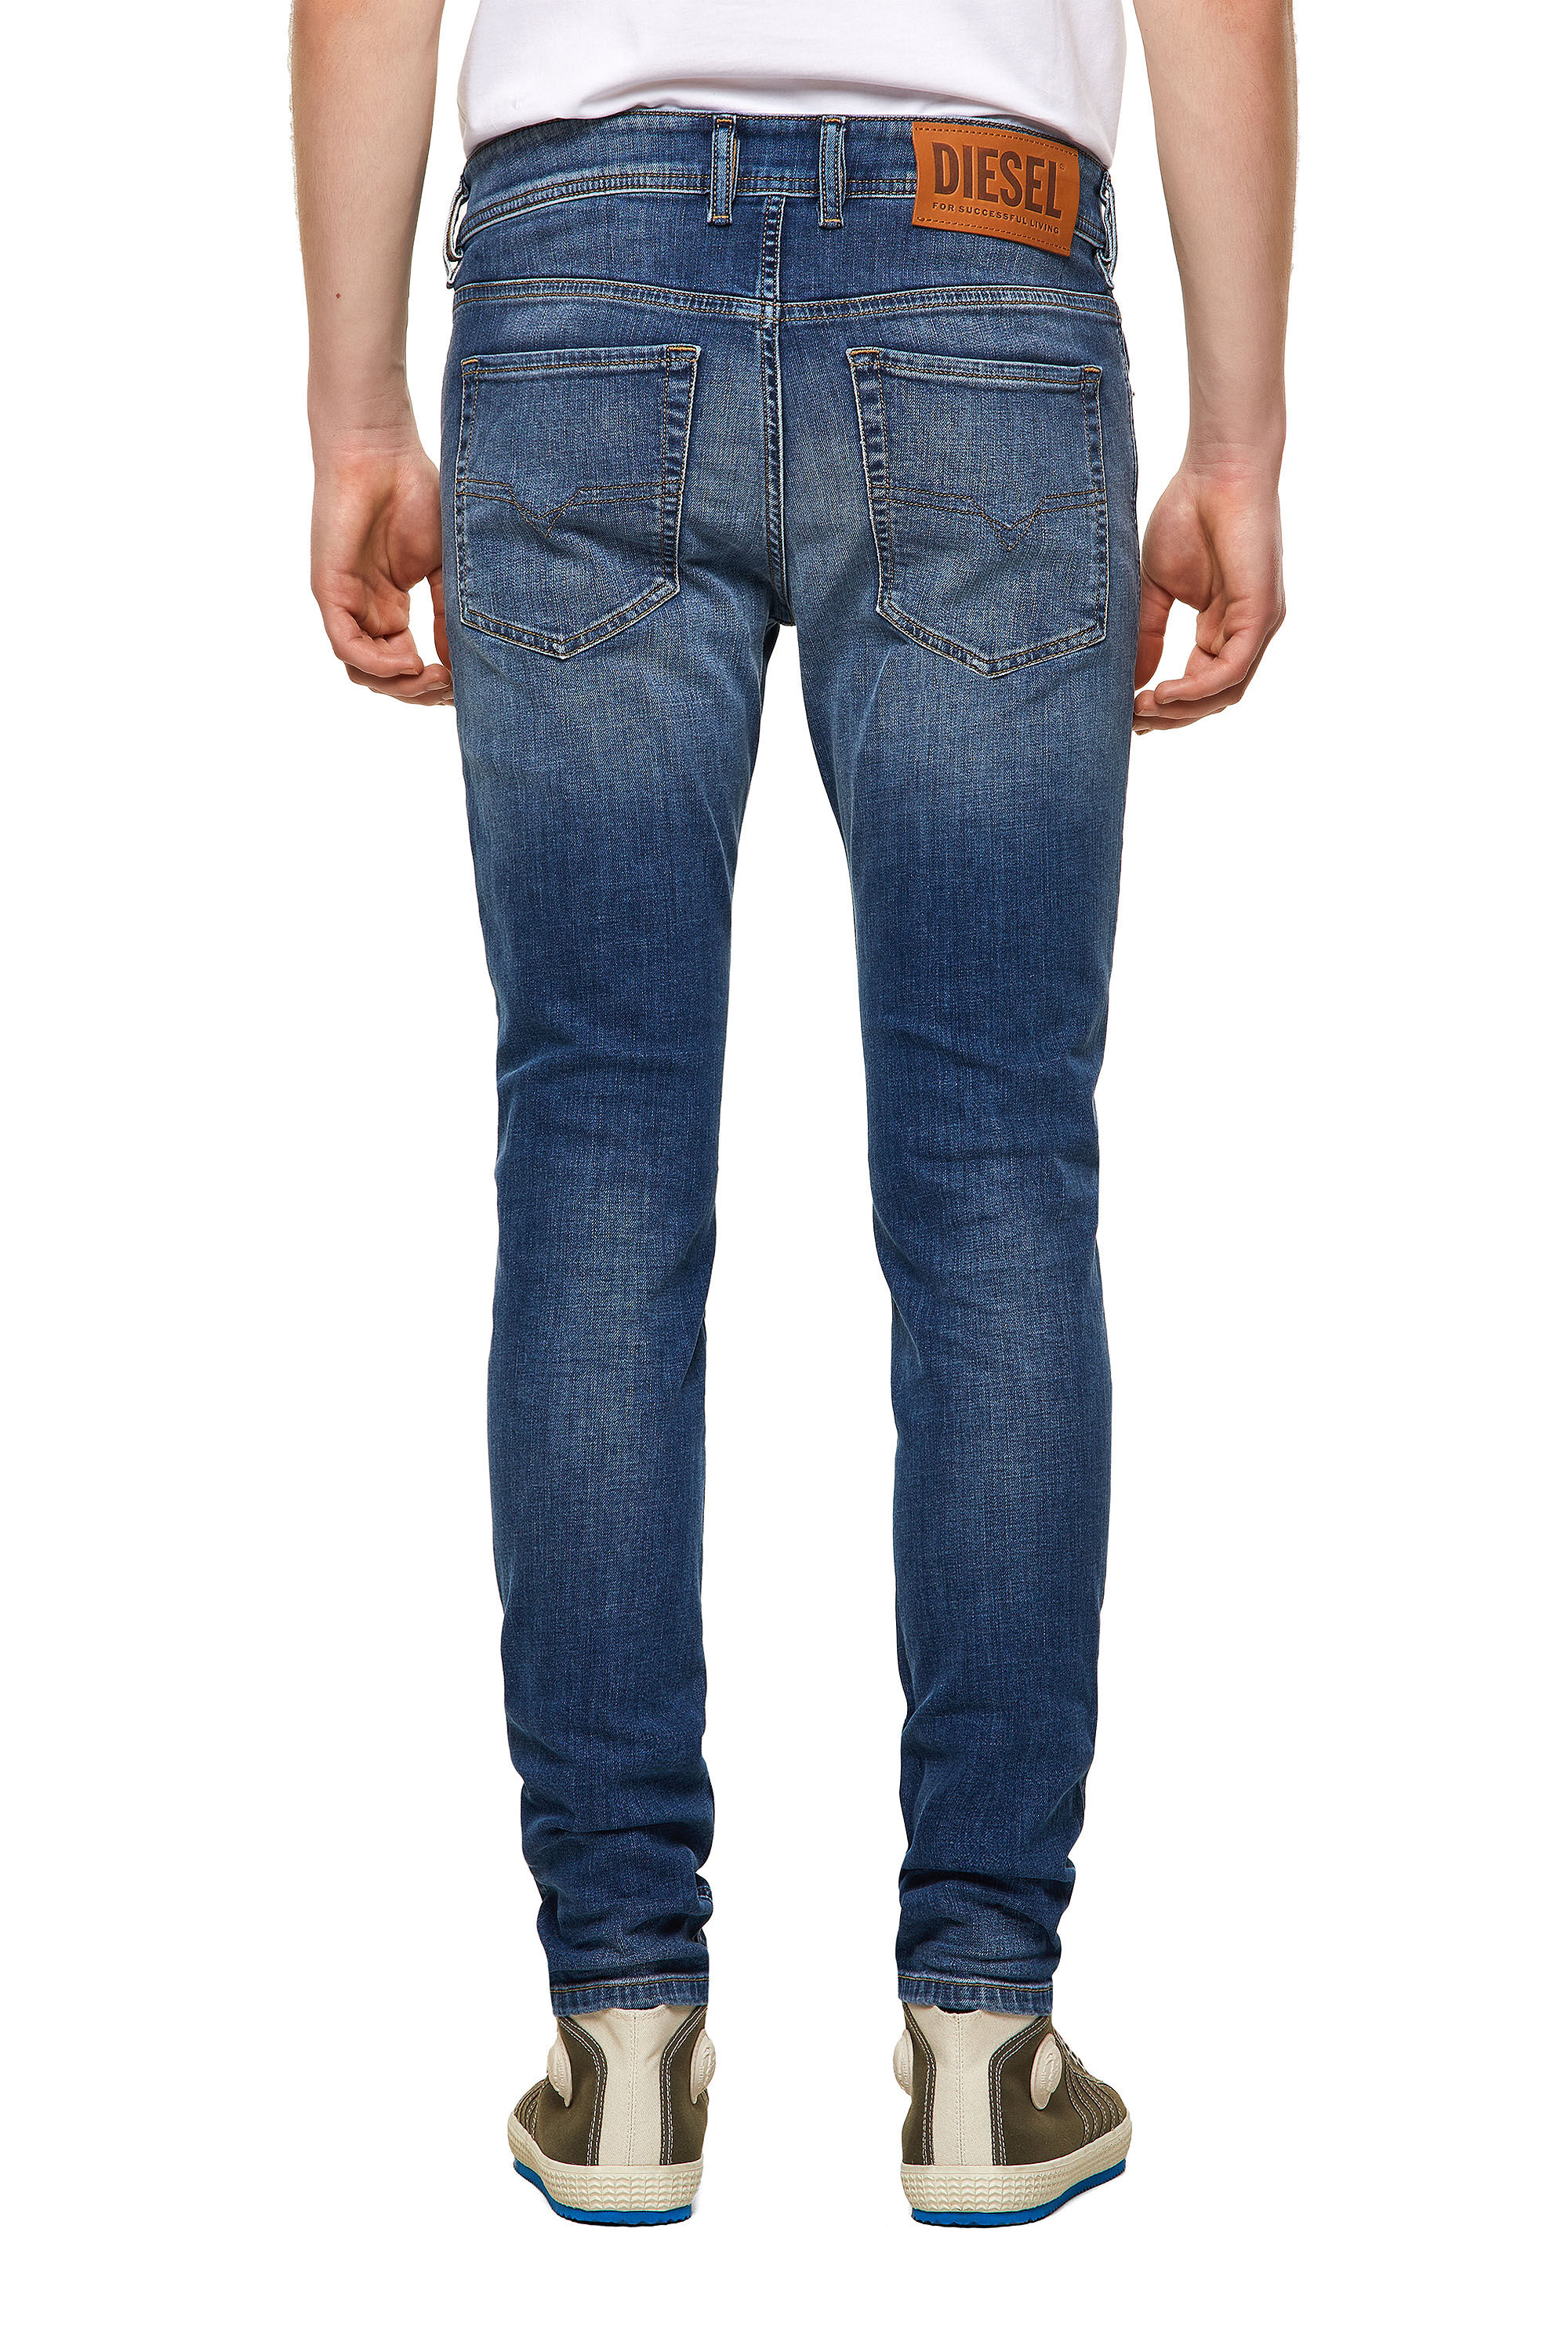 Diesel - Sleenker Skinny Jeans 09A60, Medium Blue - Image 4